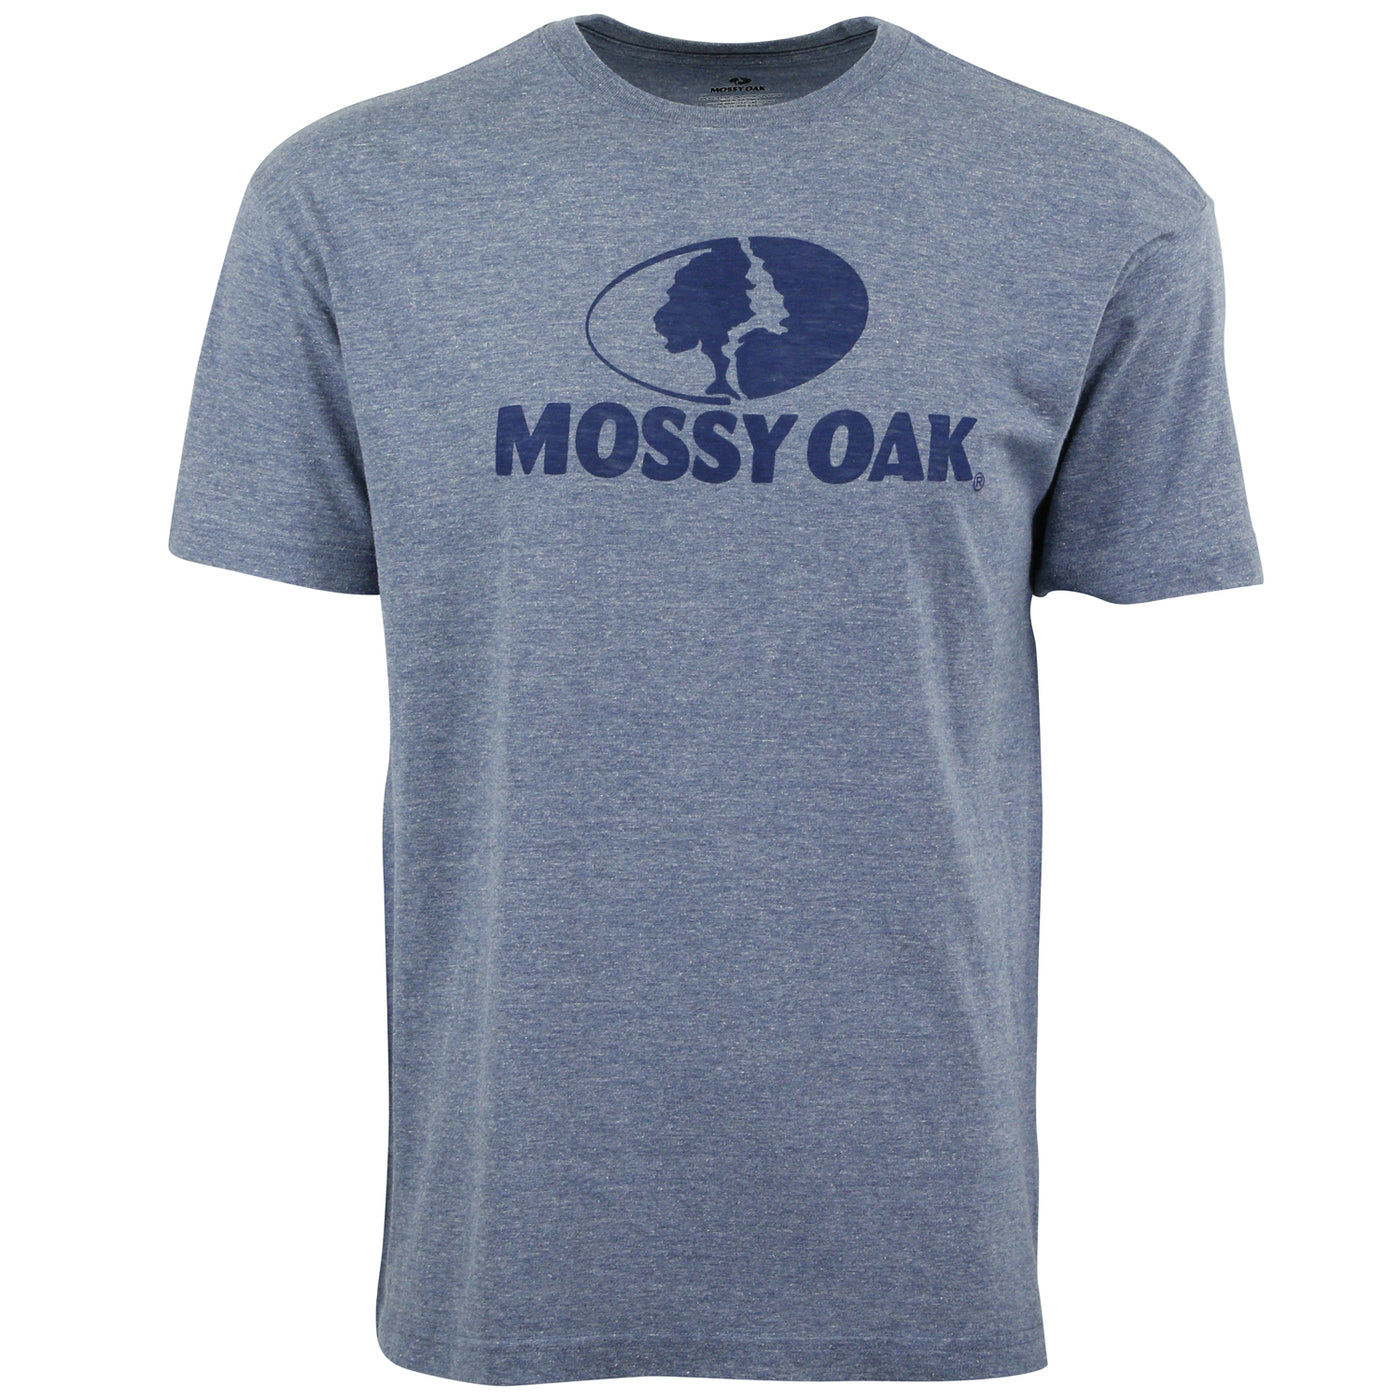 Mossy Oak Burnout Logo Tee Navy